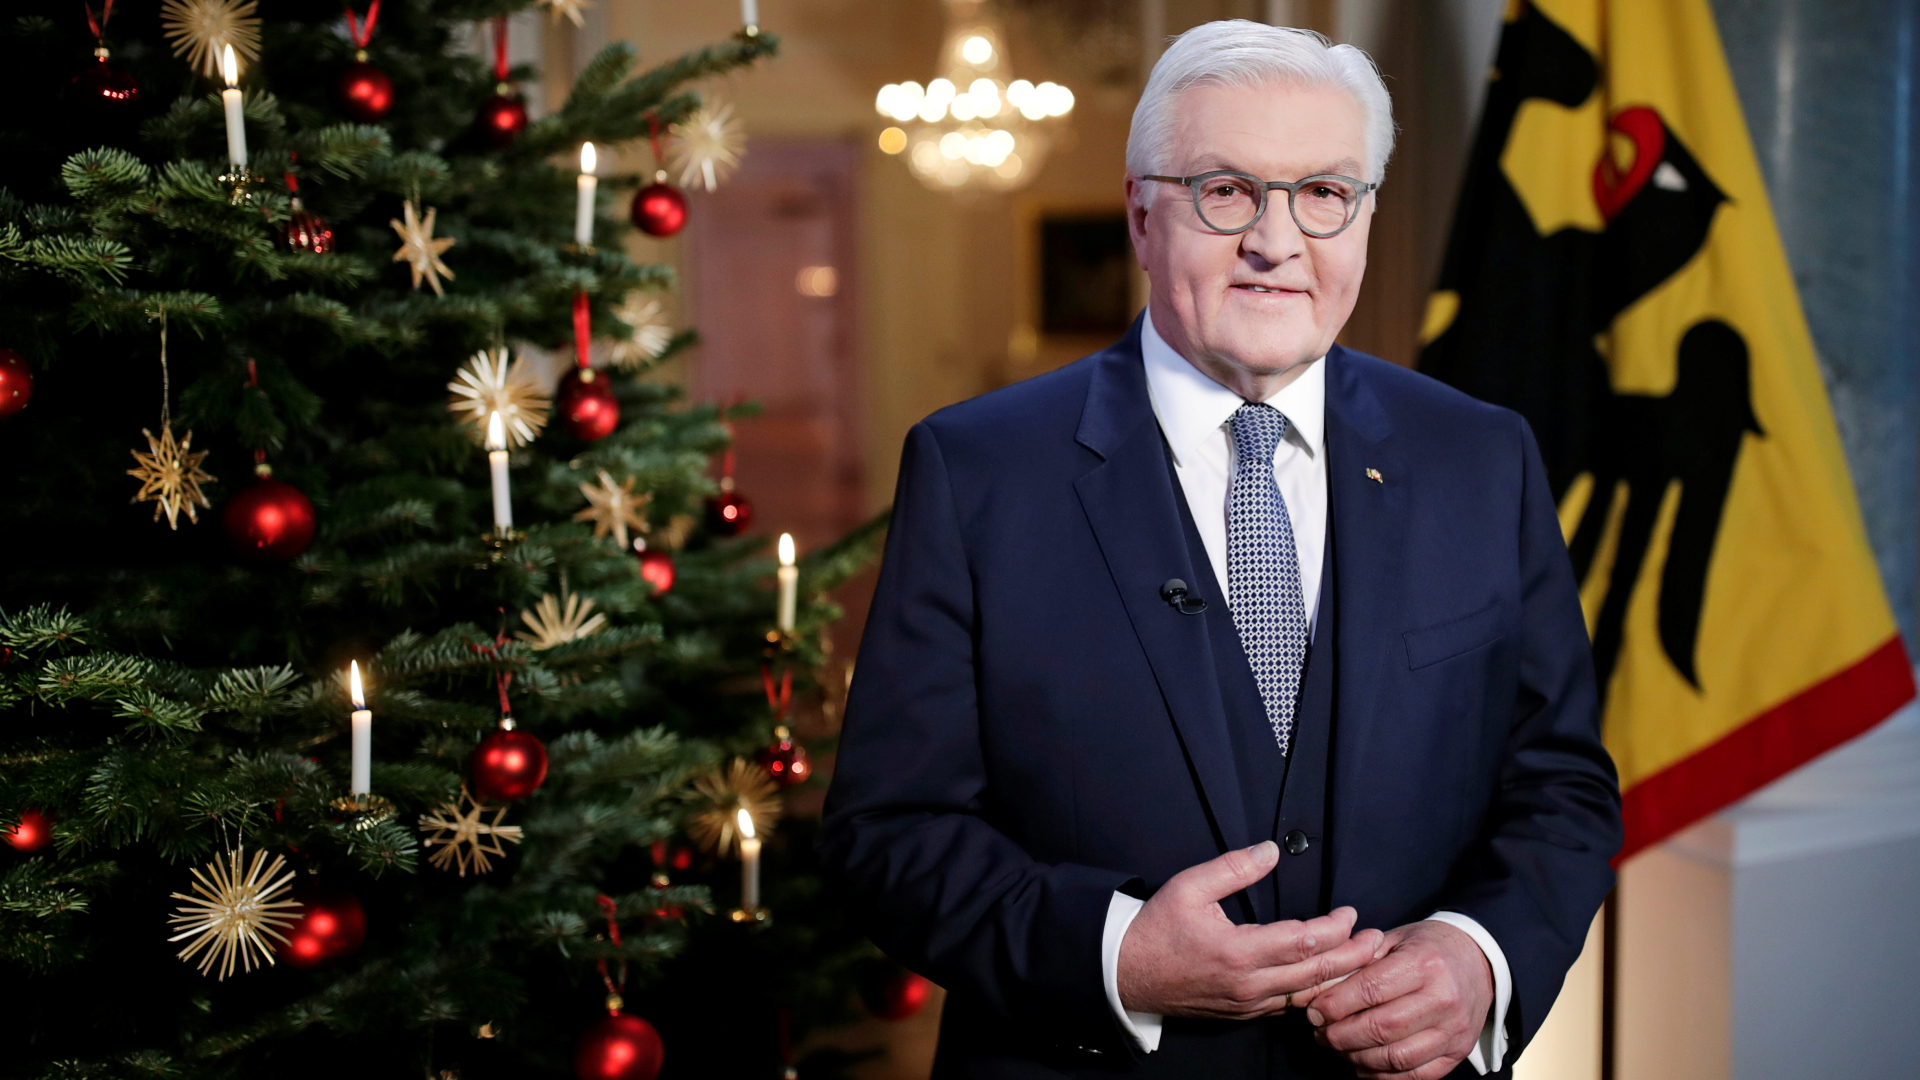 Bundespräsident Frank-Walter Steinmeier nach der Aufnahme der traditionellen Weihnachtsbotschaft im Schloss Bellevue.| Bildquelle: REUTERS